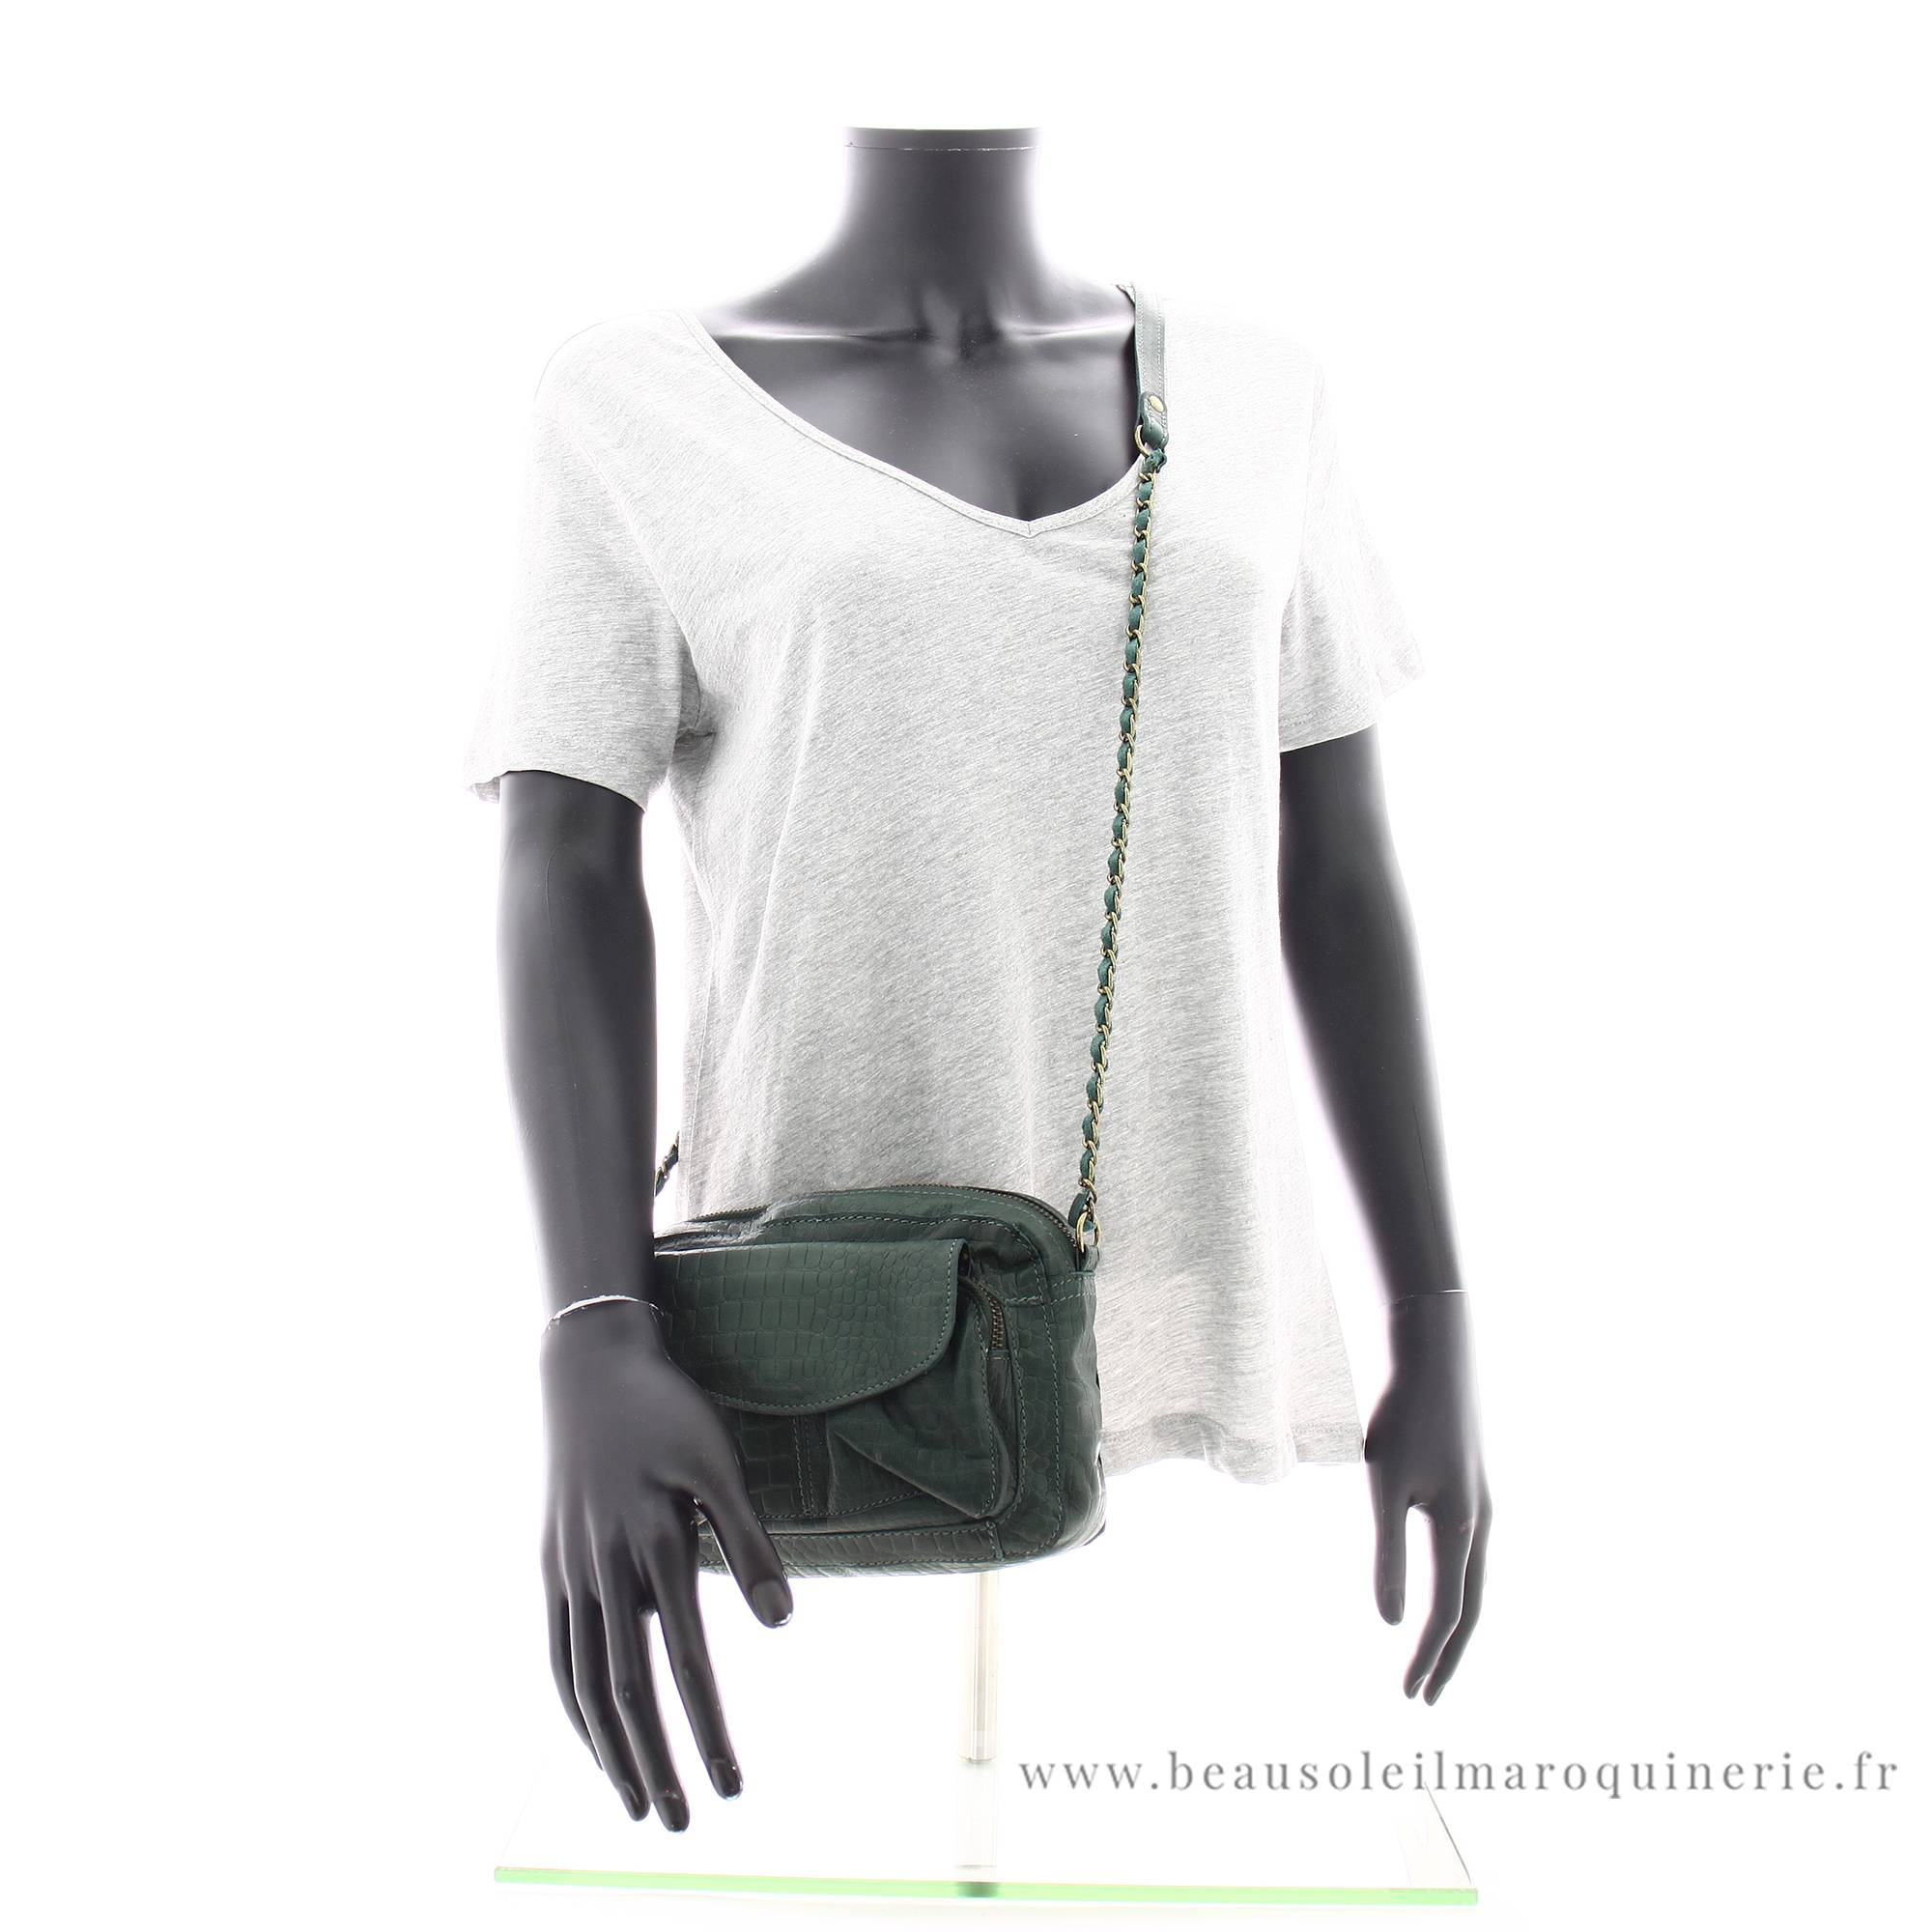 Petit sac bandoulière en cuir Pieces Naina 17063358 POCR couleur Vert pin croco, porté mannequin